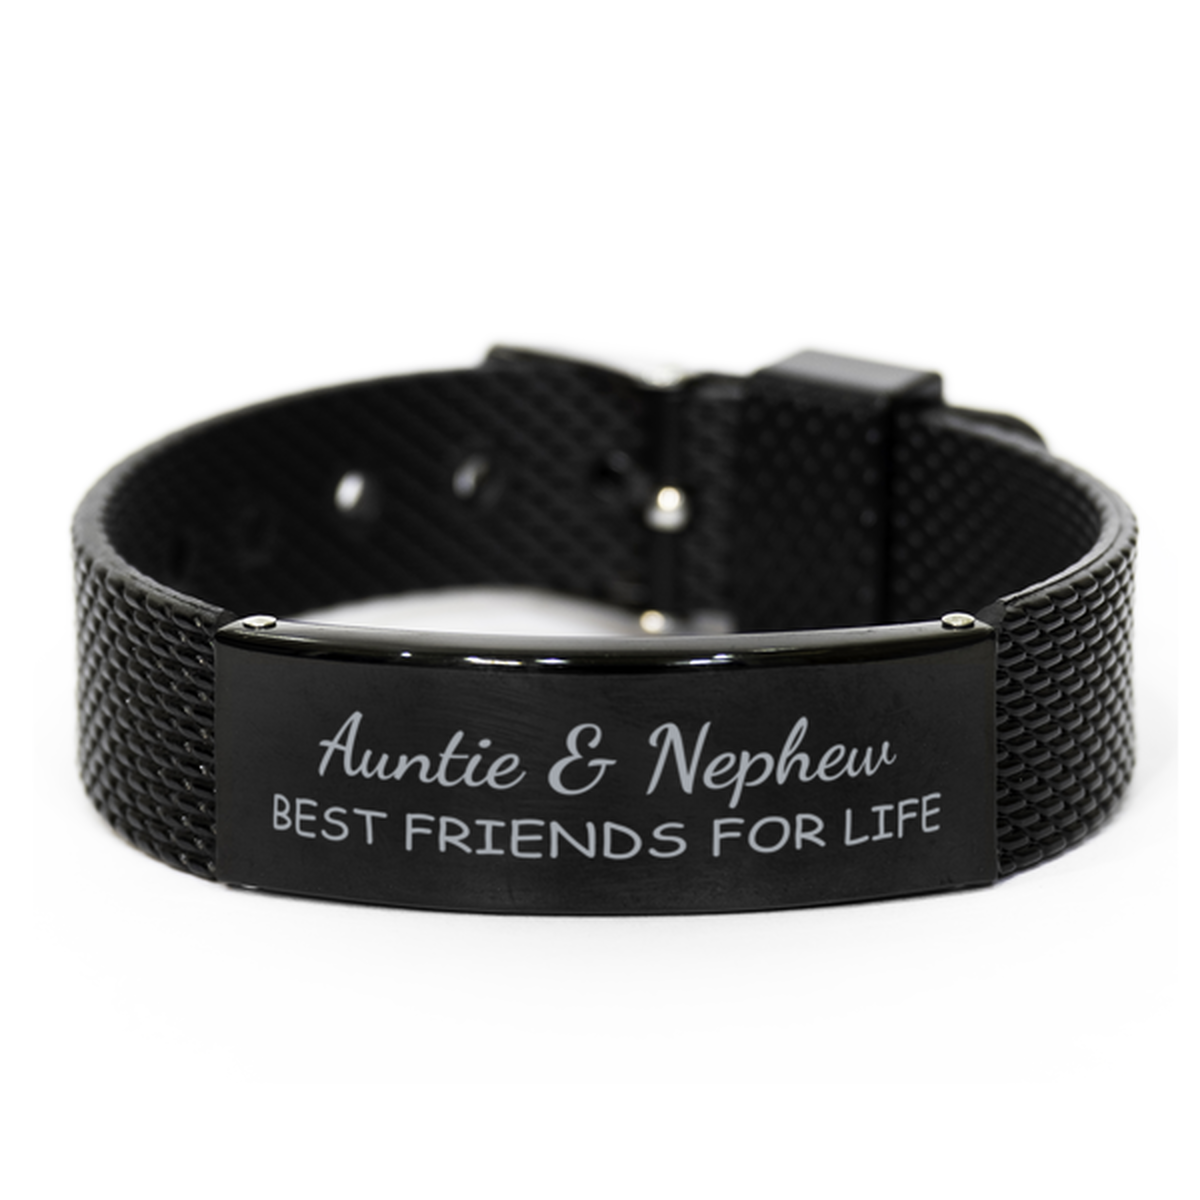 Auntie and Nephew Best Friends for Life Bracelet, Auntie Nephew Bracelet, Black Stainless Steel Leather Bracelet, Birthday, Christmas.